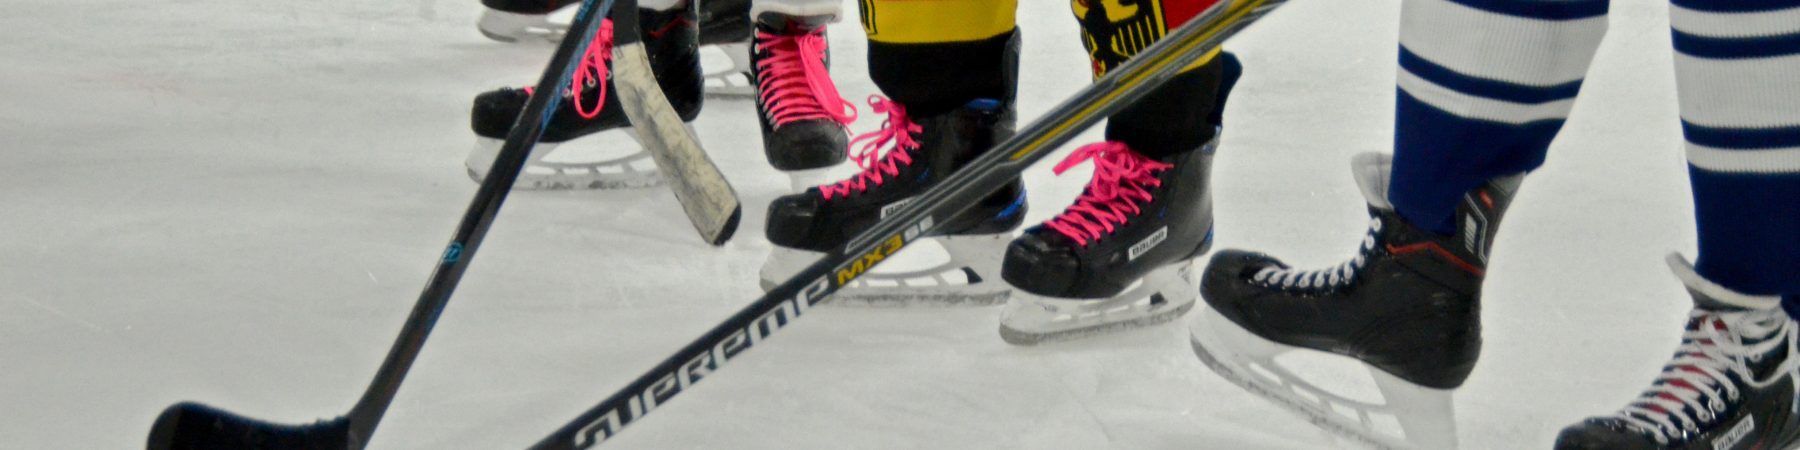 Füße in Schlittschuhen Stehen hinter Eishockeyschlägern auf einer Eisfläche